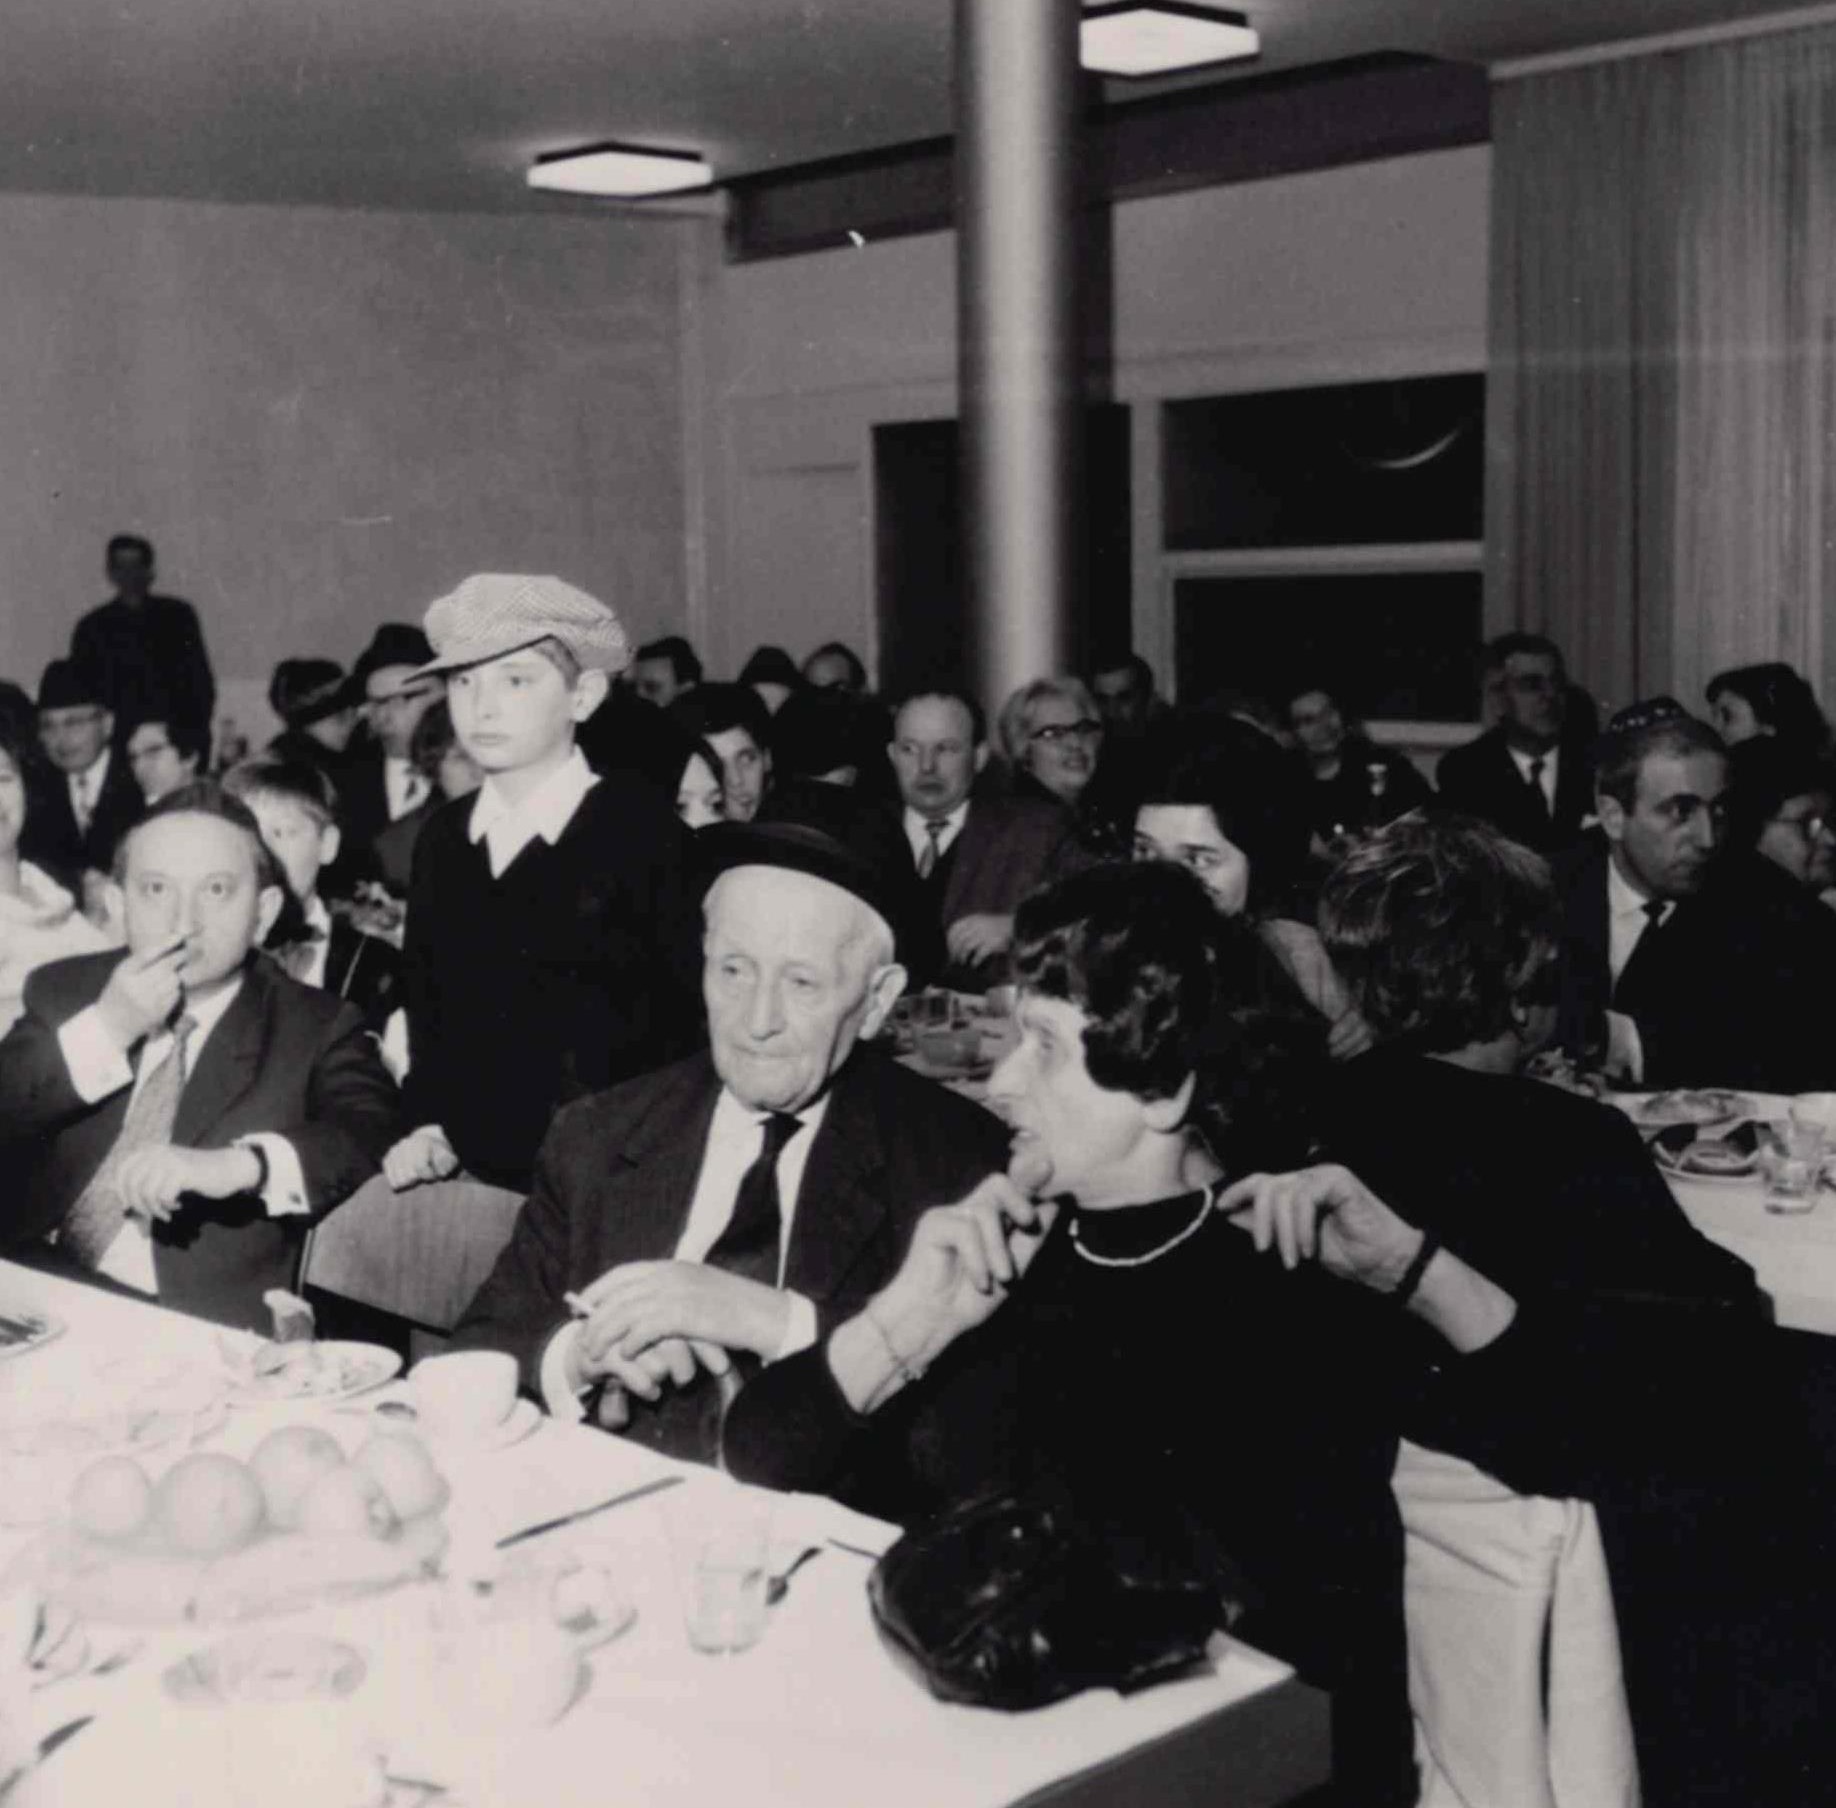 Общественное мероприятие в 1960-х годах. Коллекция Еврейской Общины Висбадена